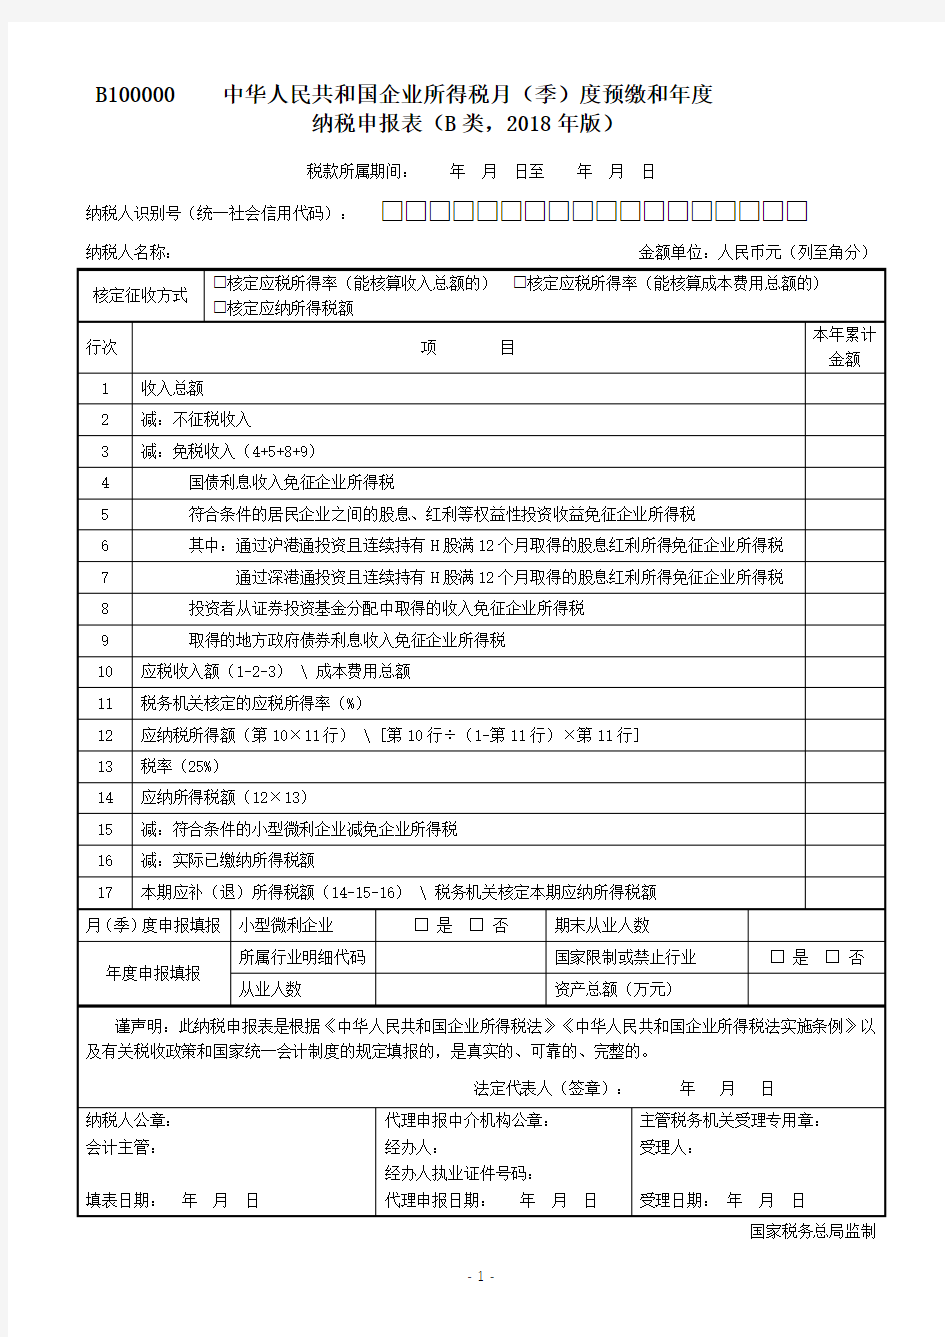 中华人民共和国企业所得税月(季)度预缴和年度纳税申报表(B类,2018年版)